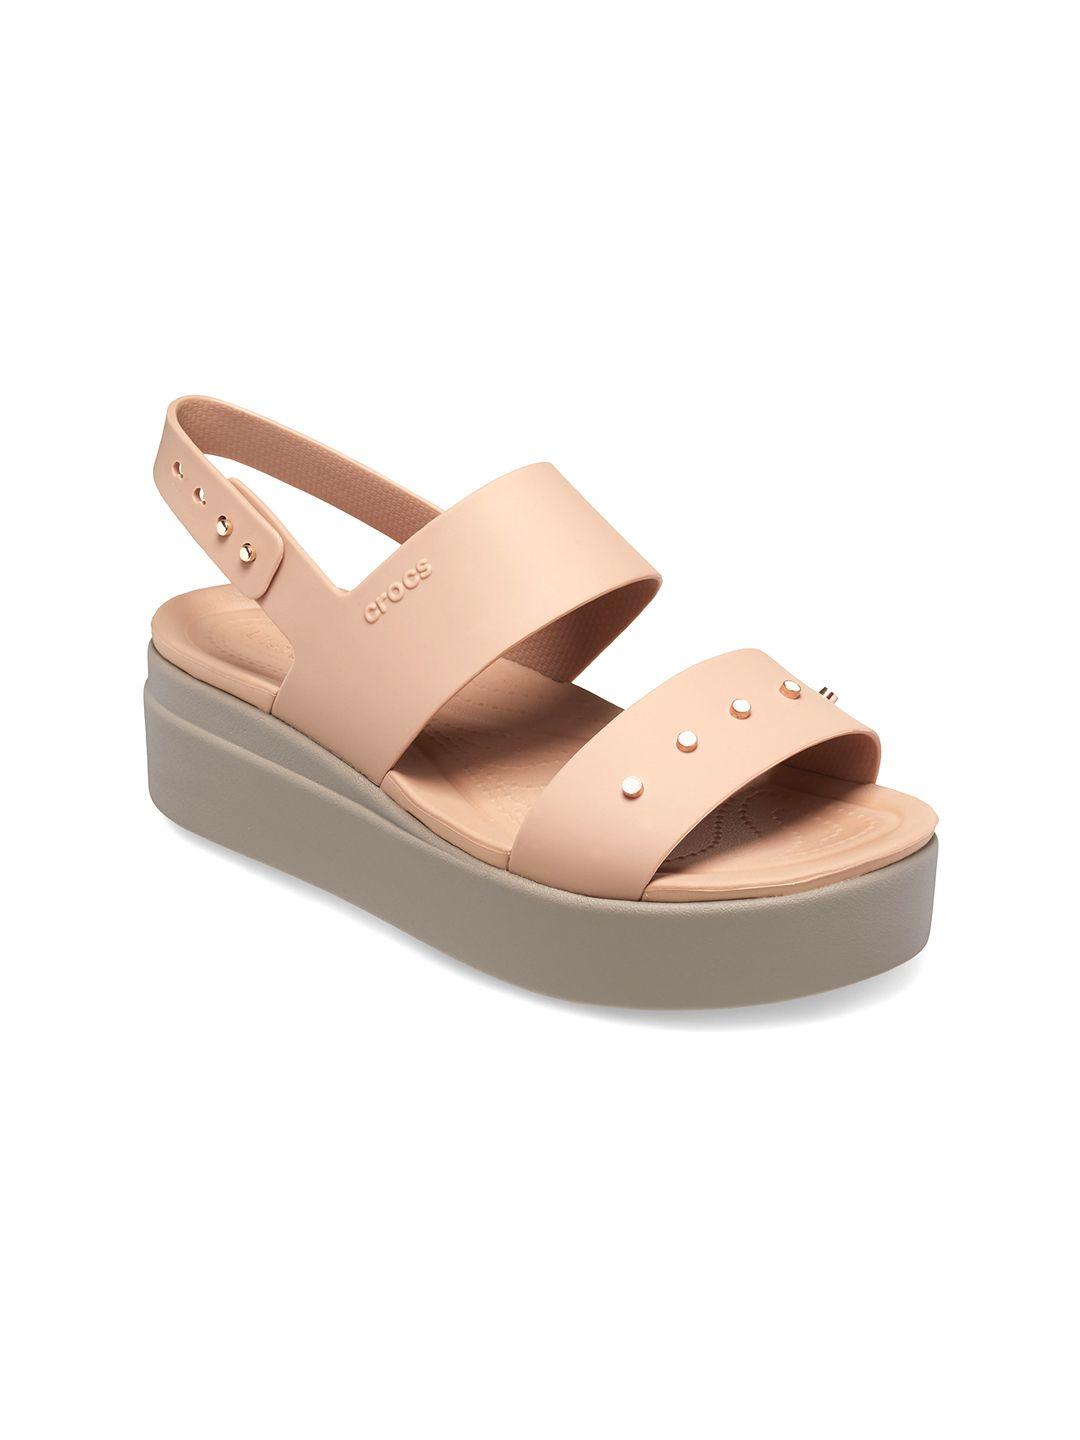 crocs-open-toe-croslite-flatform-heels